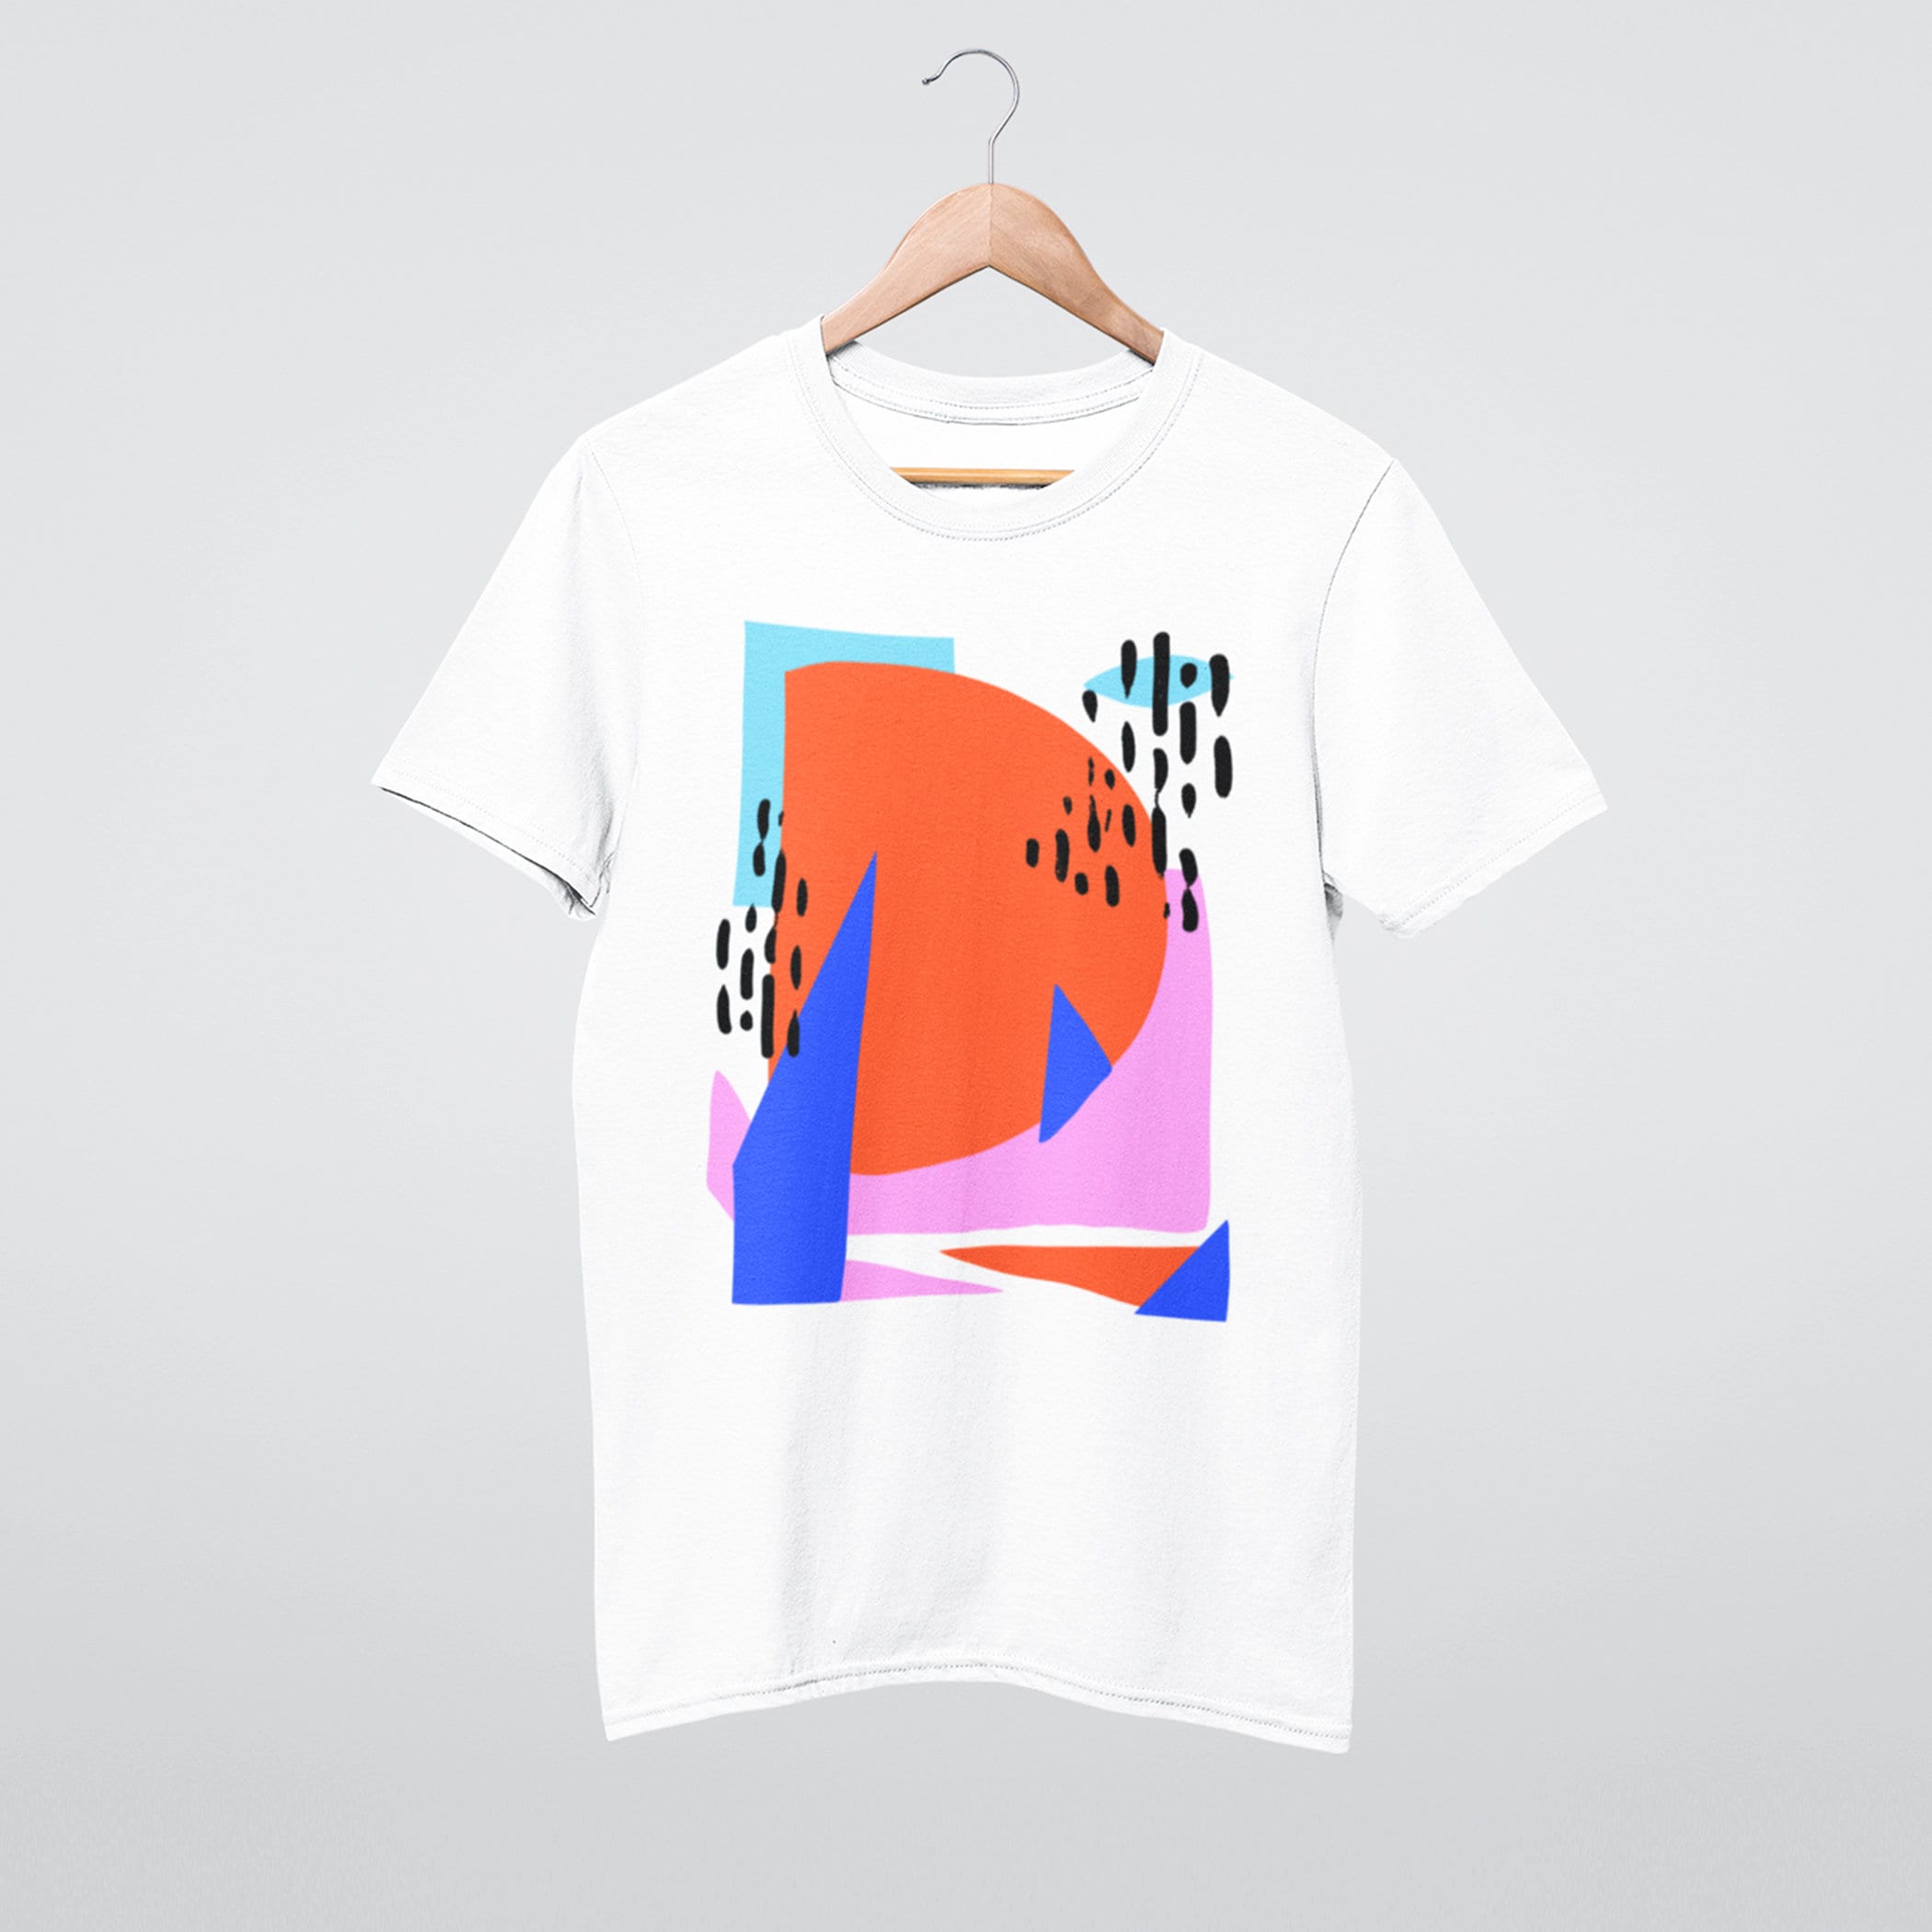 Summer Drawing Shirt, Tshirt, Geometric Tshirt, - Unisex Art Etsy Tshirt, Shirt Abstract Shirt, Colorful Tshirt, Cotton Tshirt, Tshirt, Graphic Art